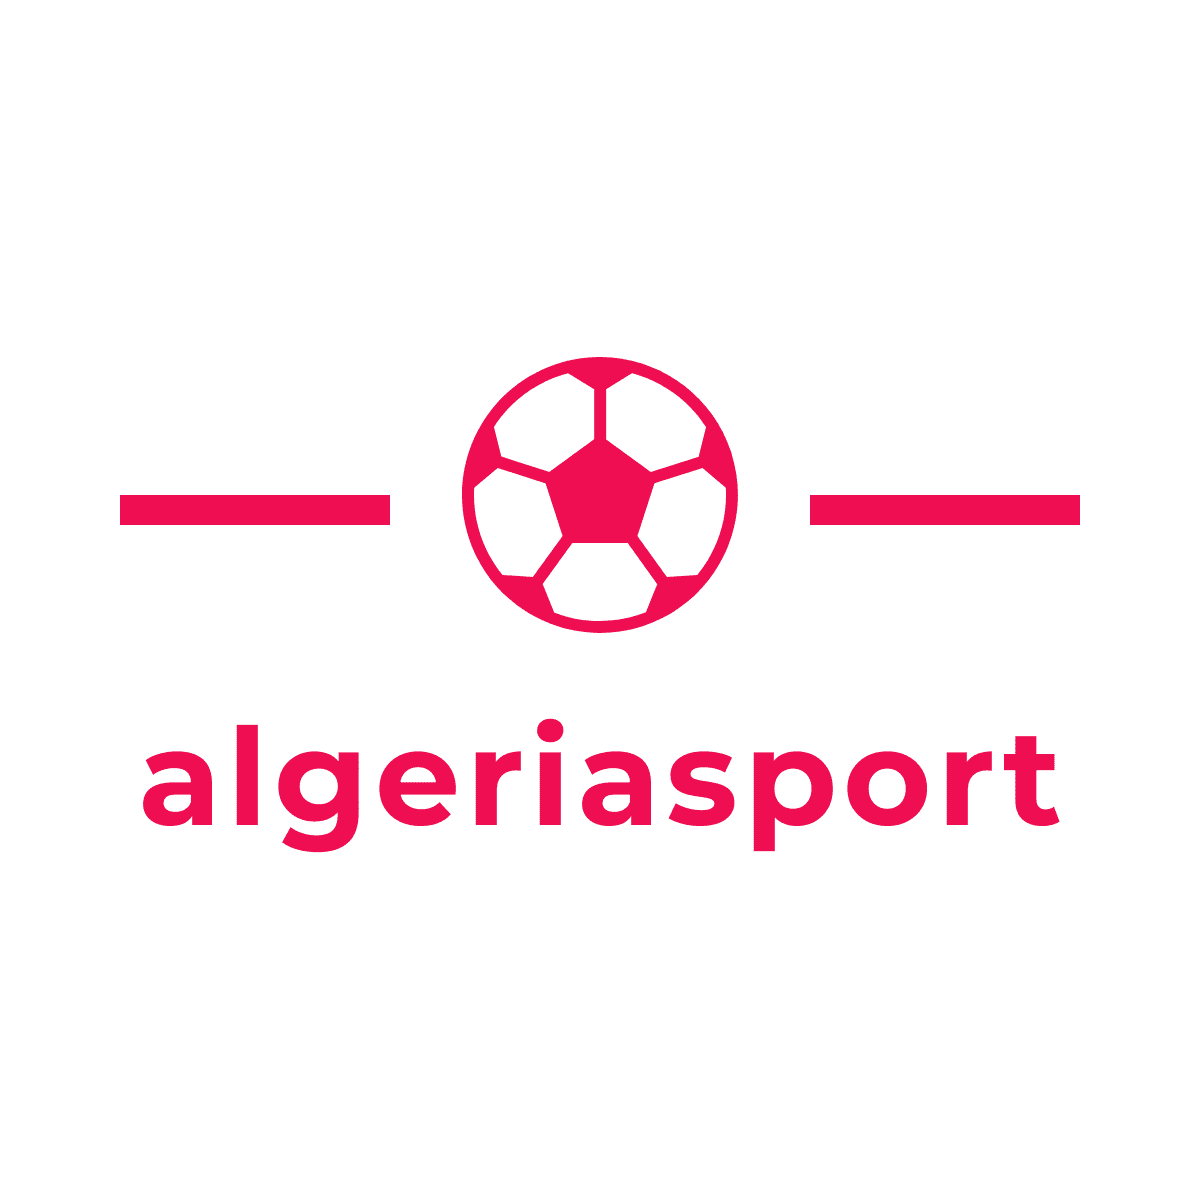 algeriasport.football - عالم الكرة: رحلة شيقة في أرض الرياضة الأكثر شعبية